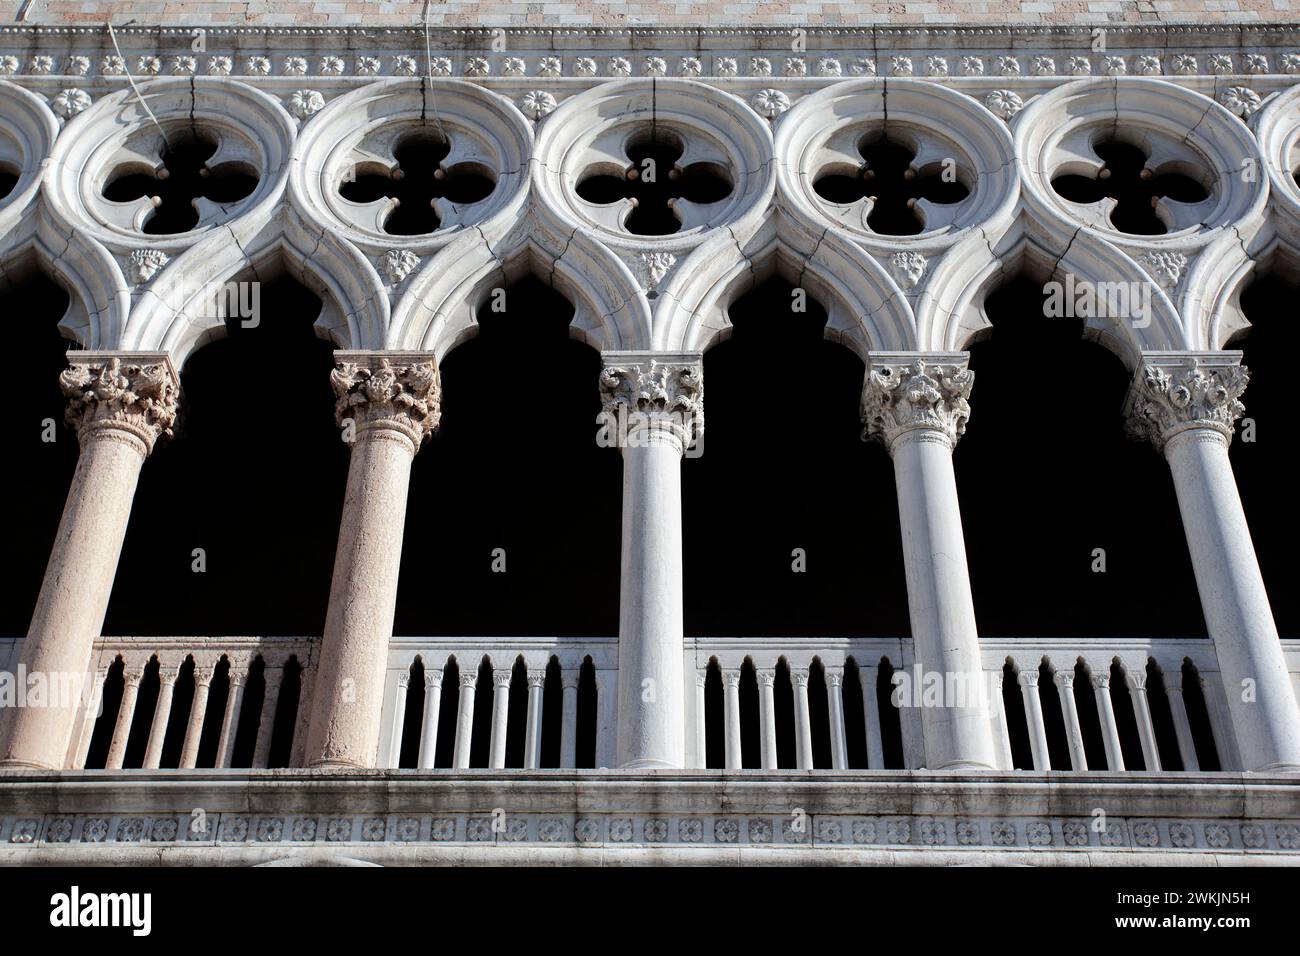 Ein Detail über der Außenfassade des Dogenpalastes (Palazzo Ducale) in venezianischer gotischer Architektur, Piazzetta San Marco, Venedig, Venetien, Italien. Stockfoto